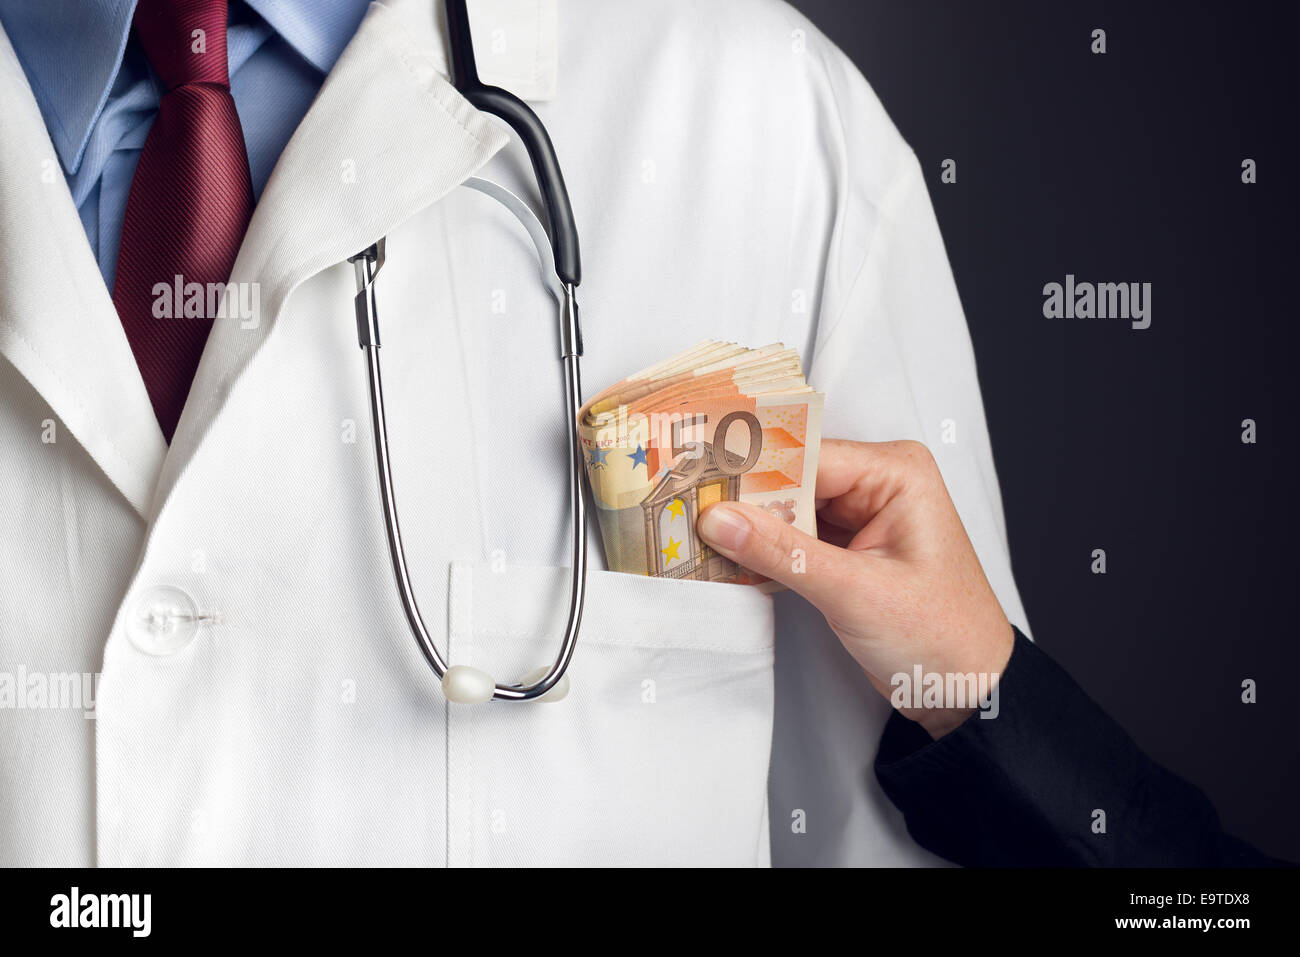 Korruption im Gesundheitswesen, Arzt empfangen große Menge an Euro-Banknoten als Bestechung. Stockfoto